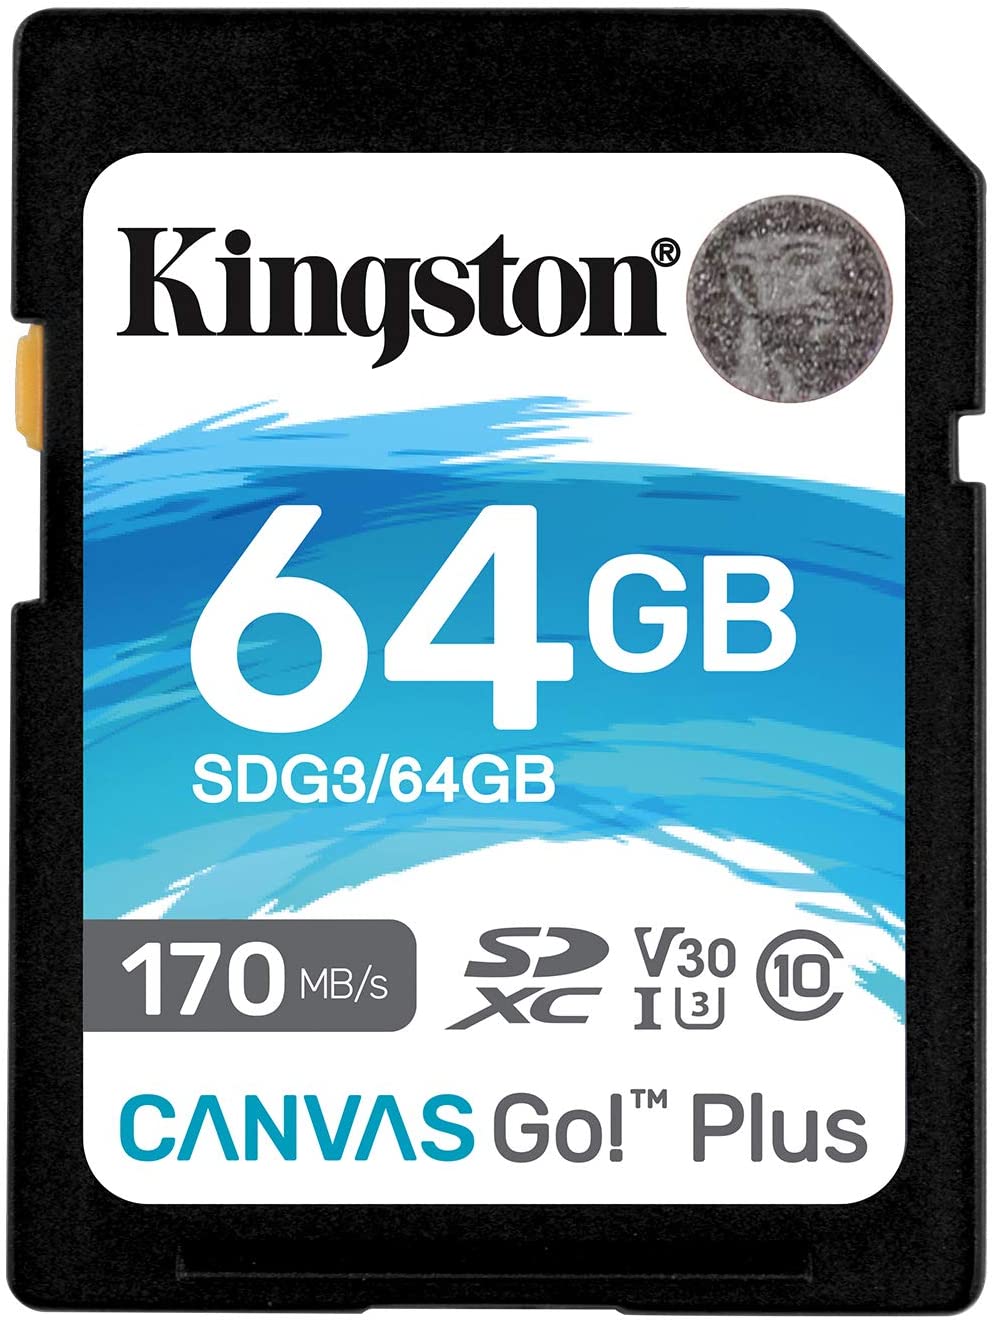 Kingston Tarjeta SDXC 64GB UHS-I U3 V30 Clase 10 170MB/s